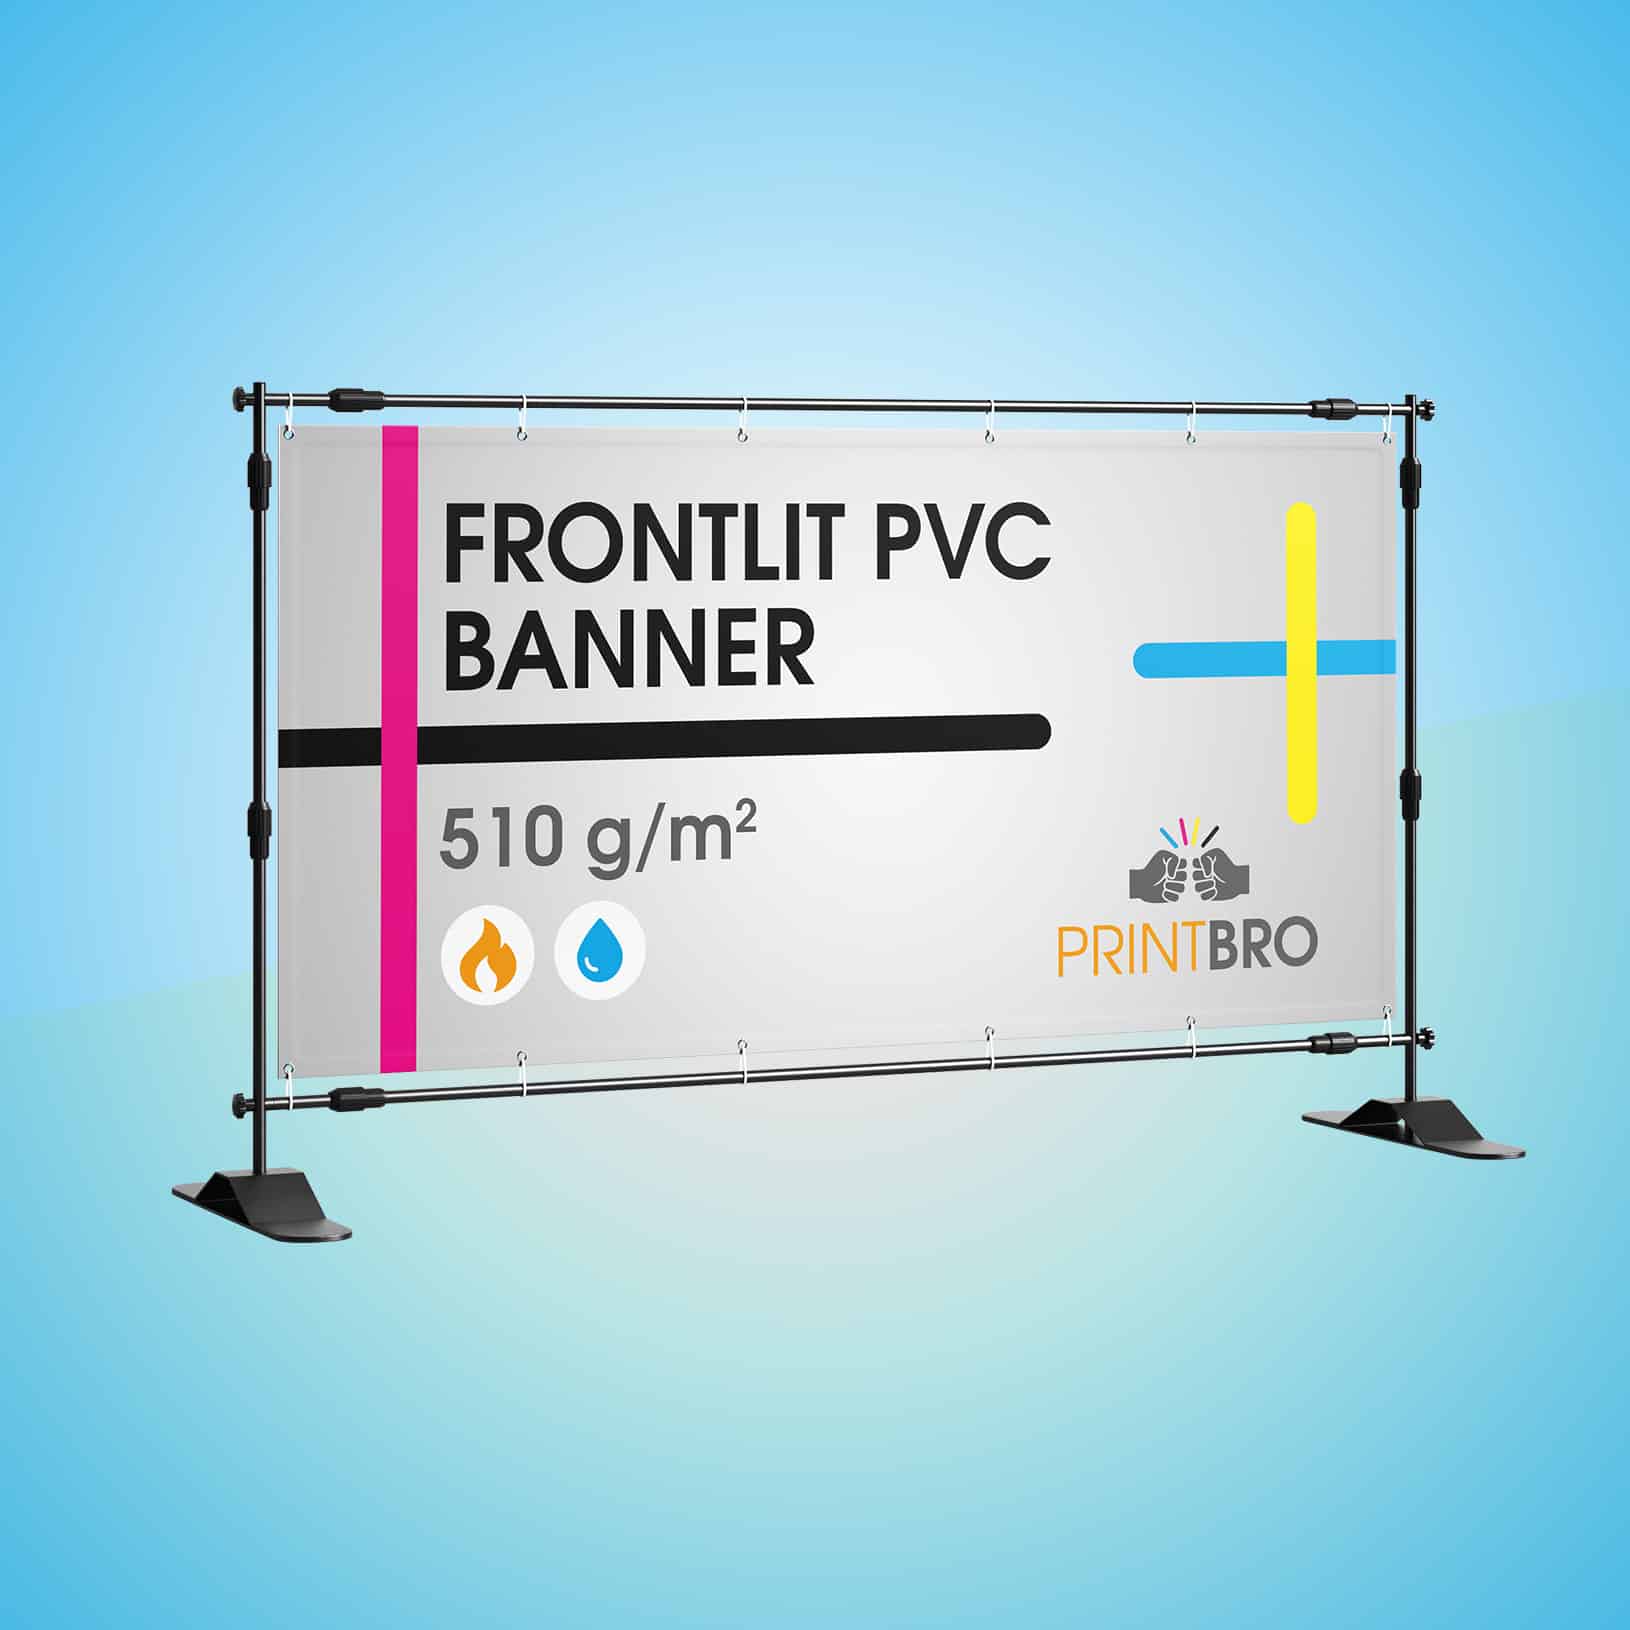 pvc frontlit banner